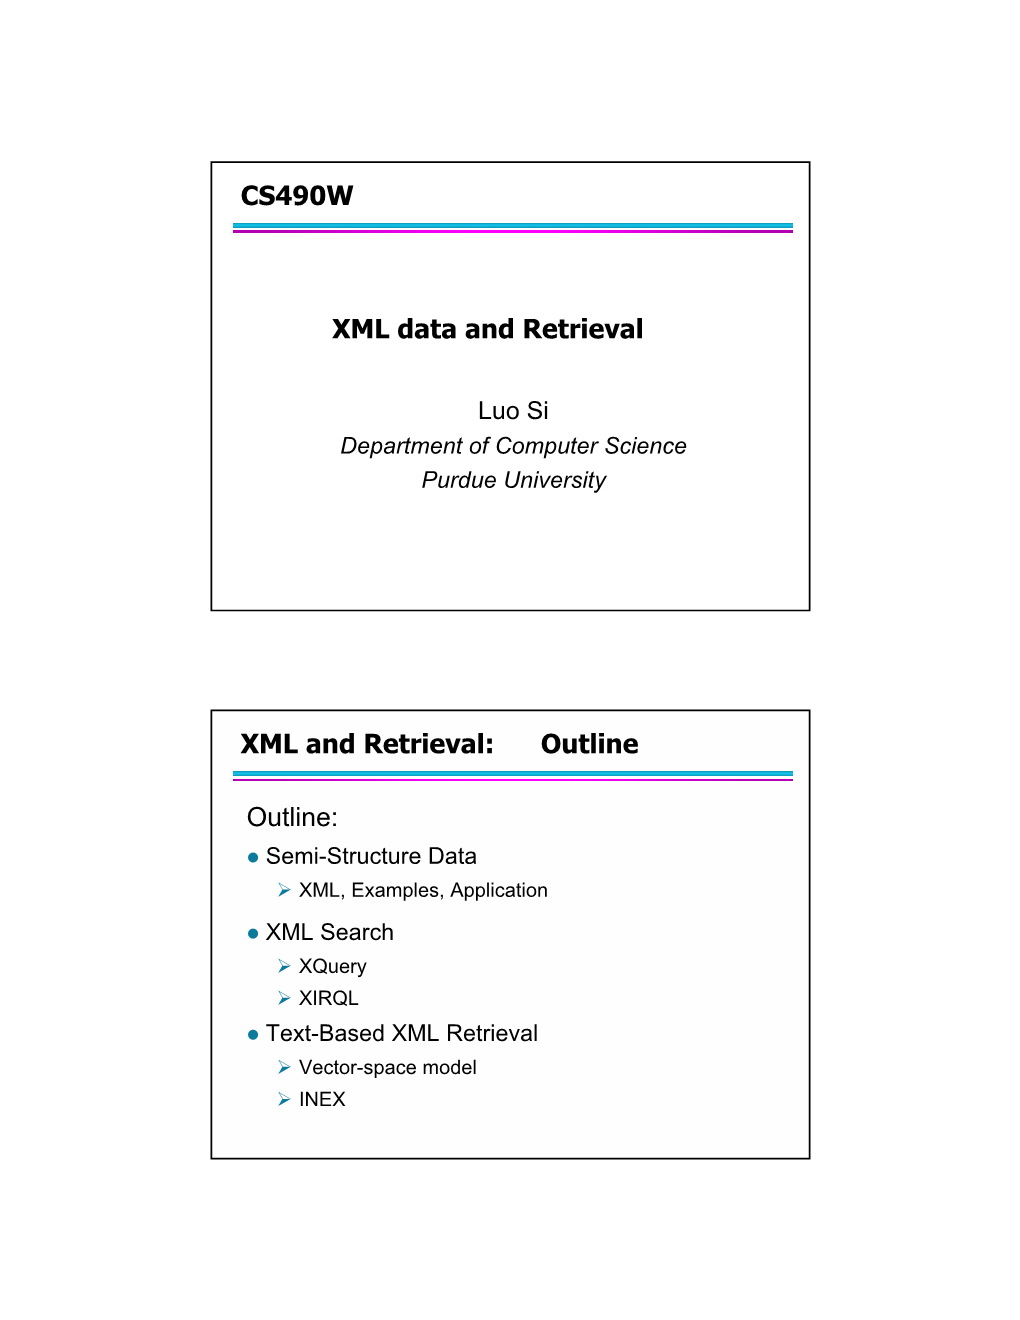 CS490W XML Data and Retrieval XML and Retrieval